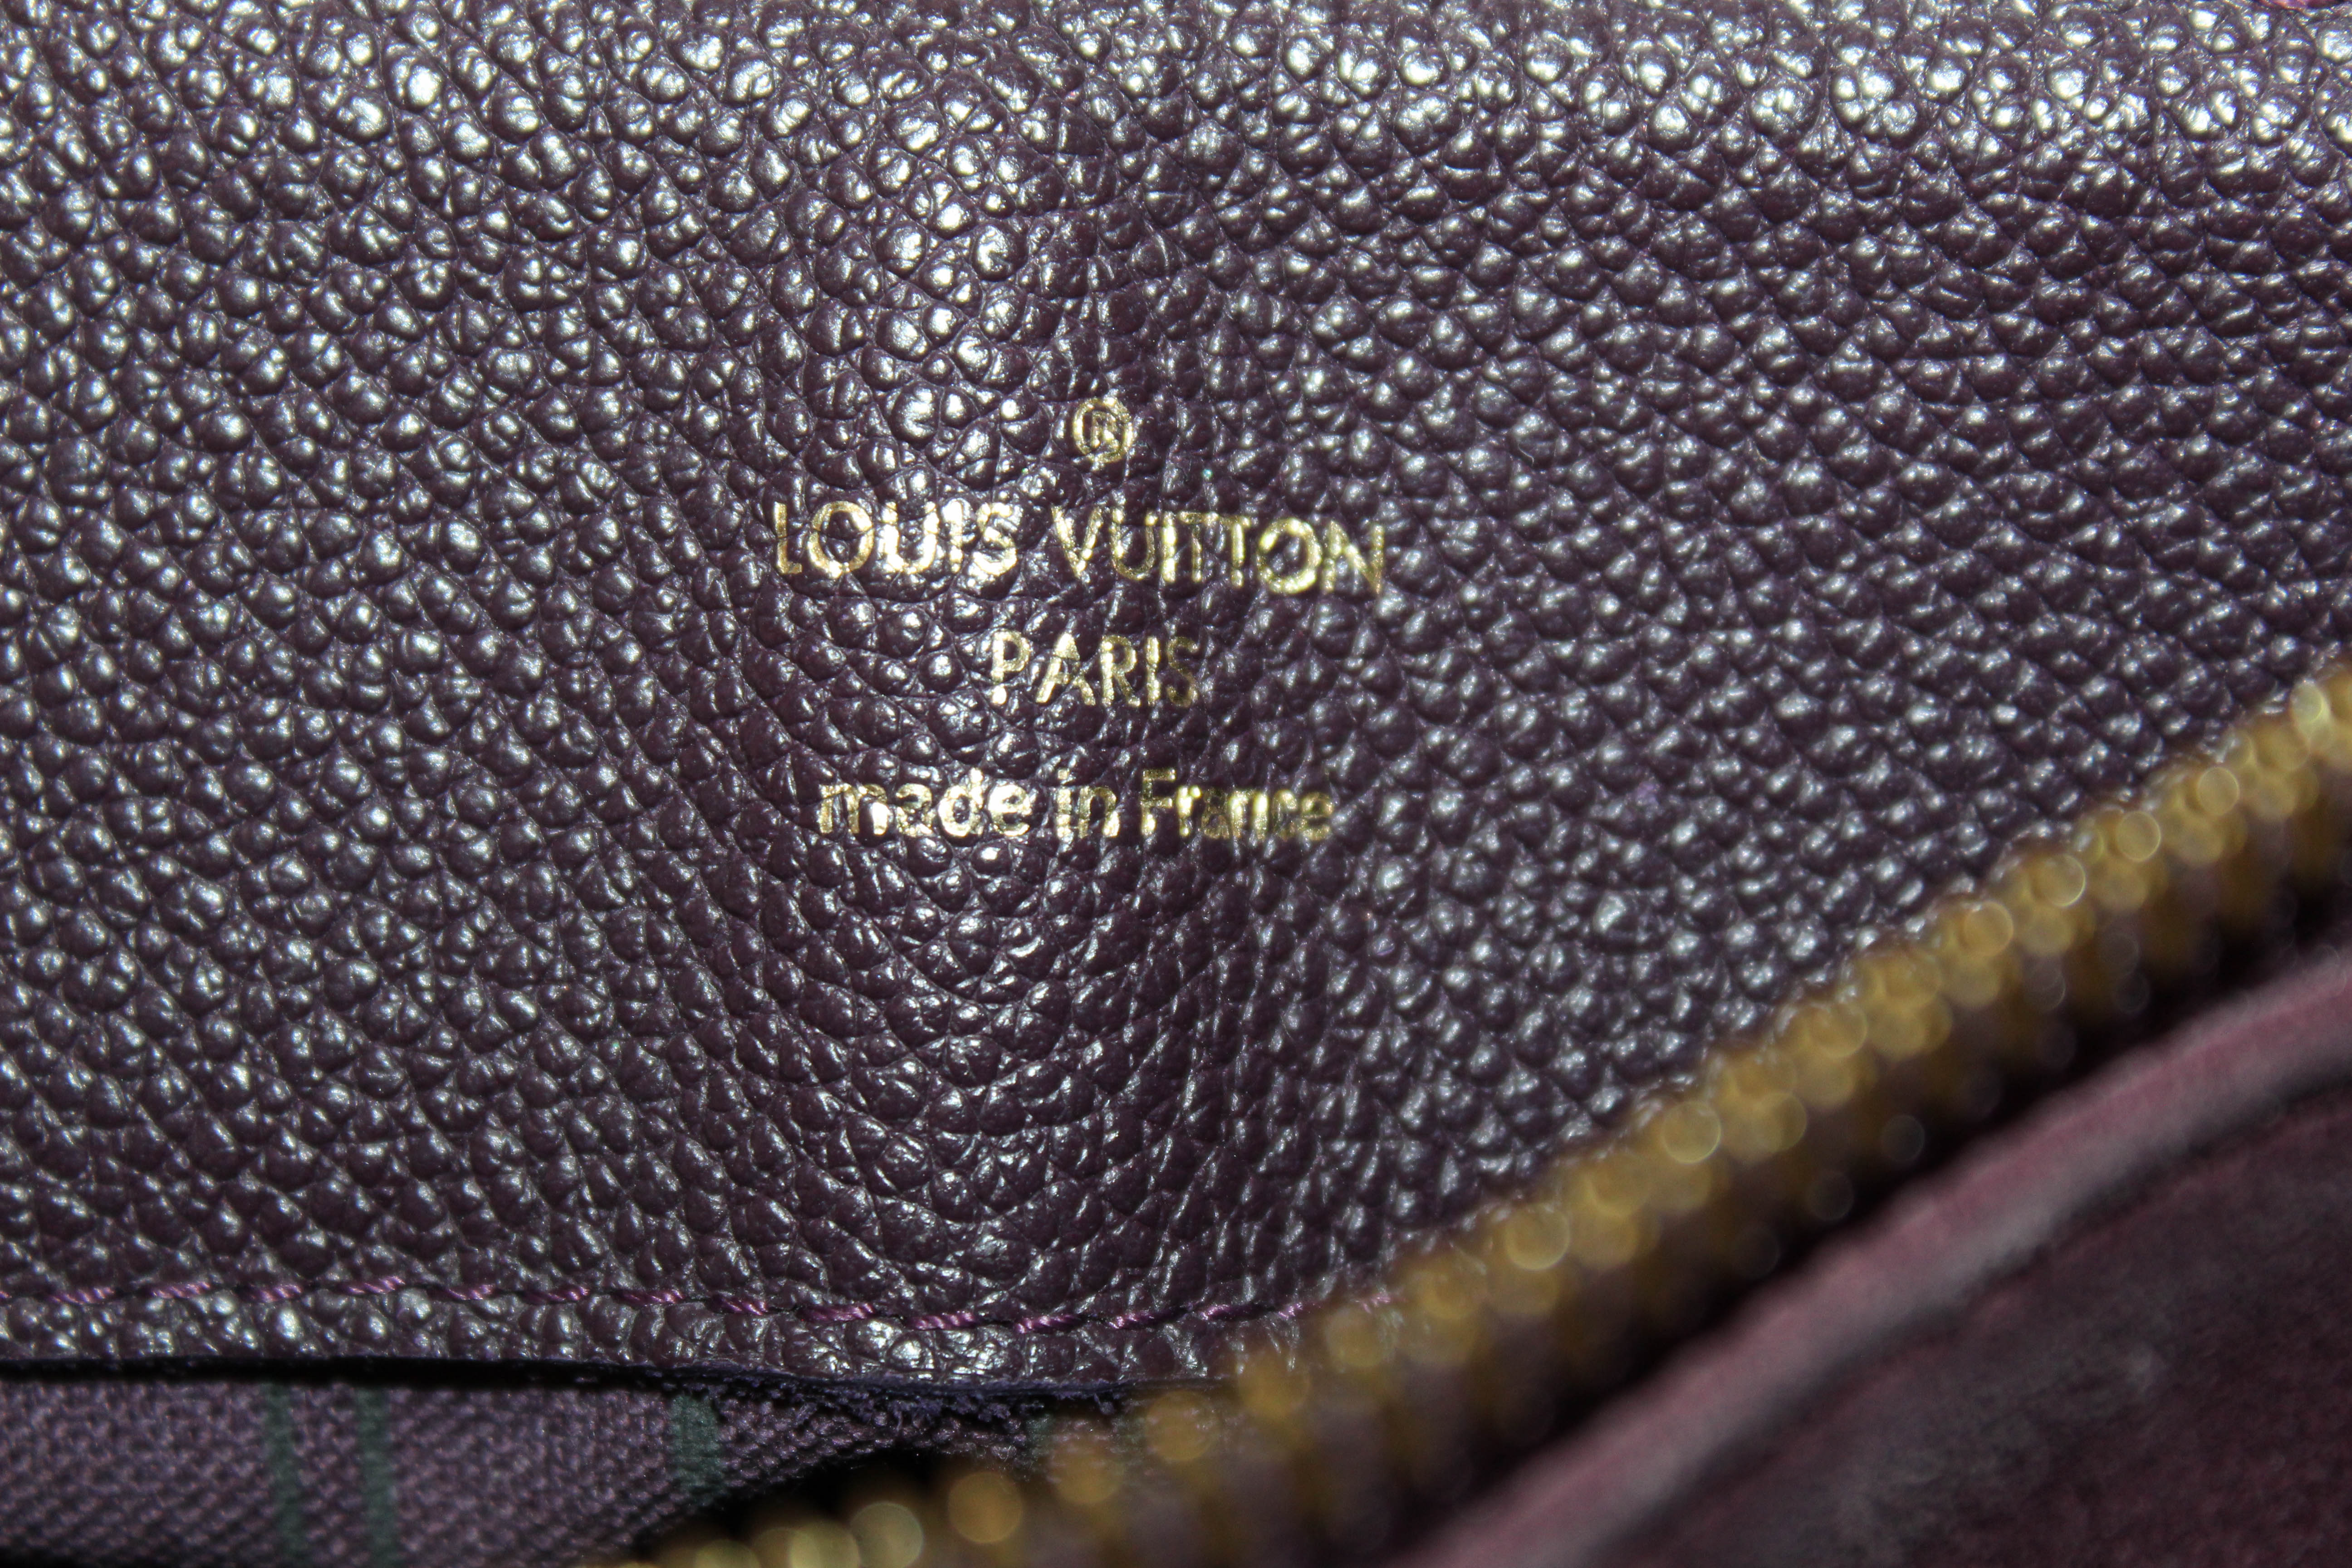 Louis Vuitton Audacieuse MM Bag